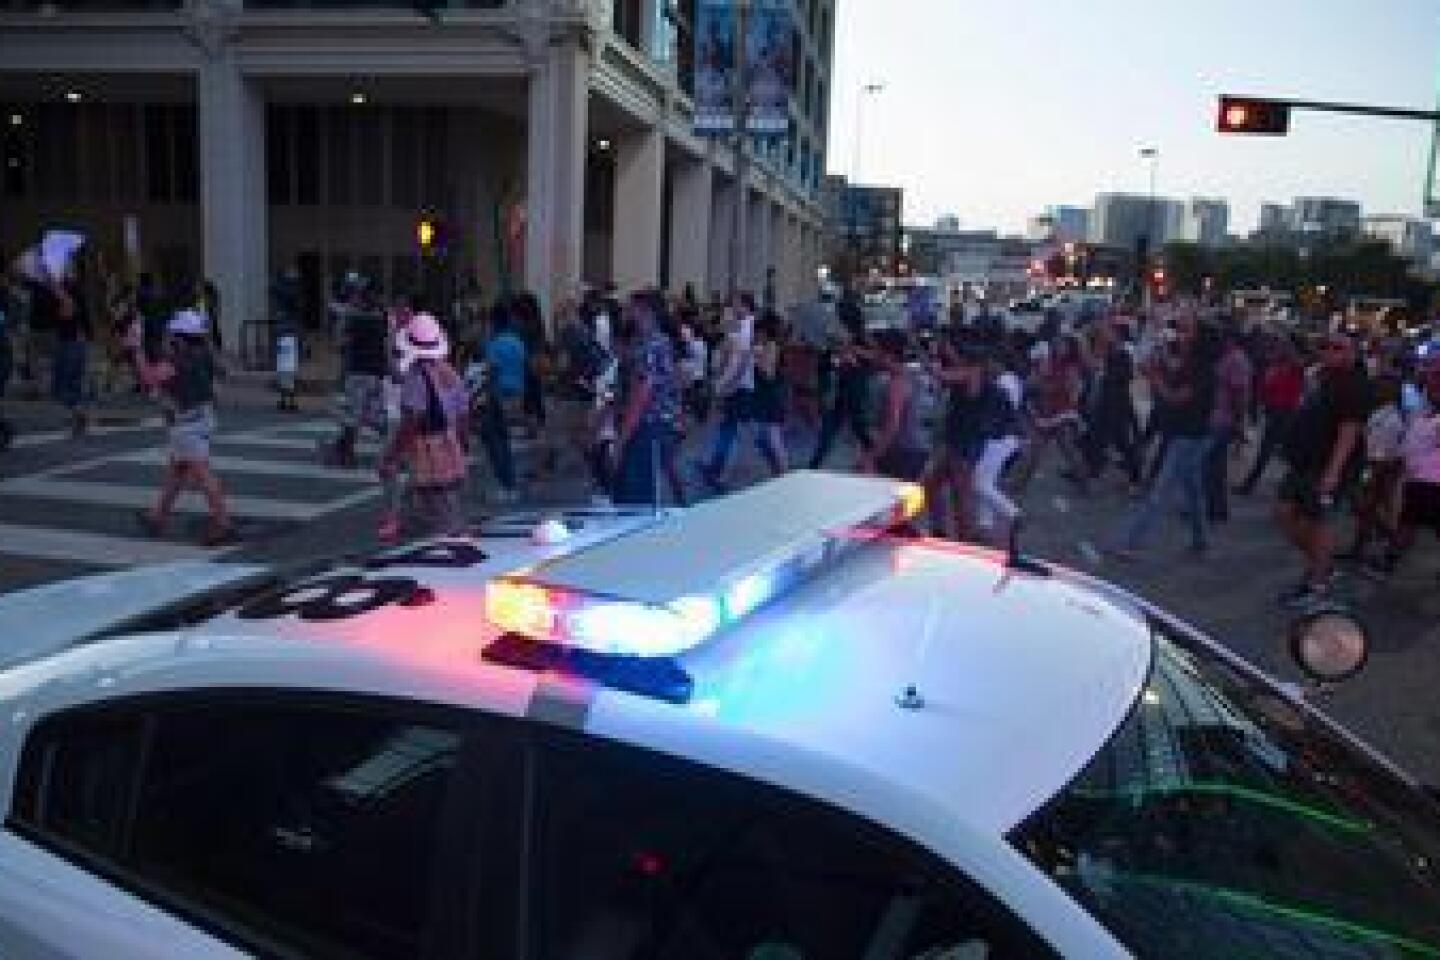 Dallas police protest